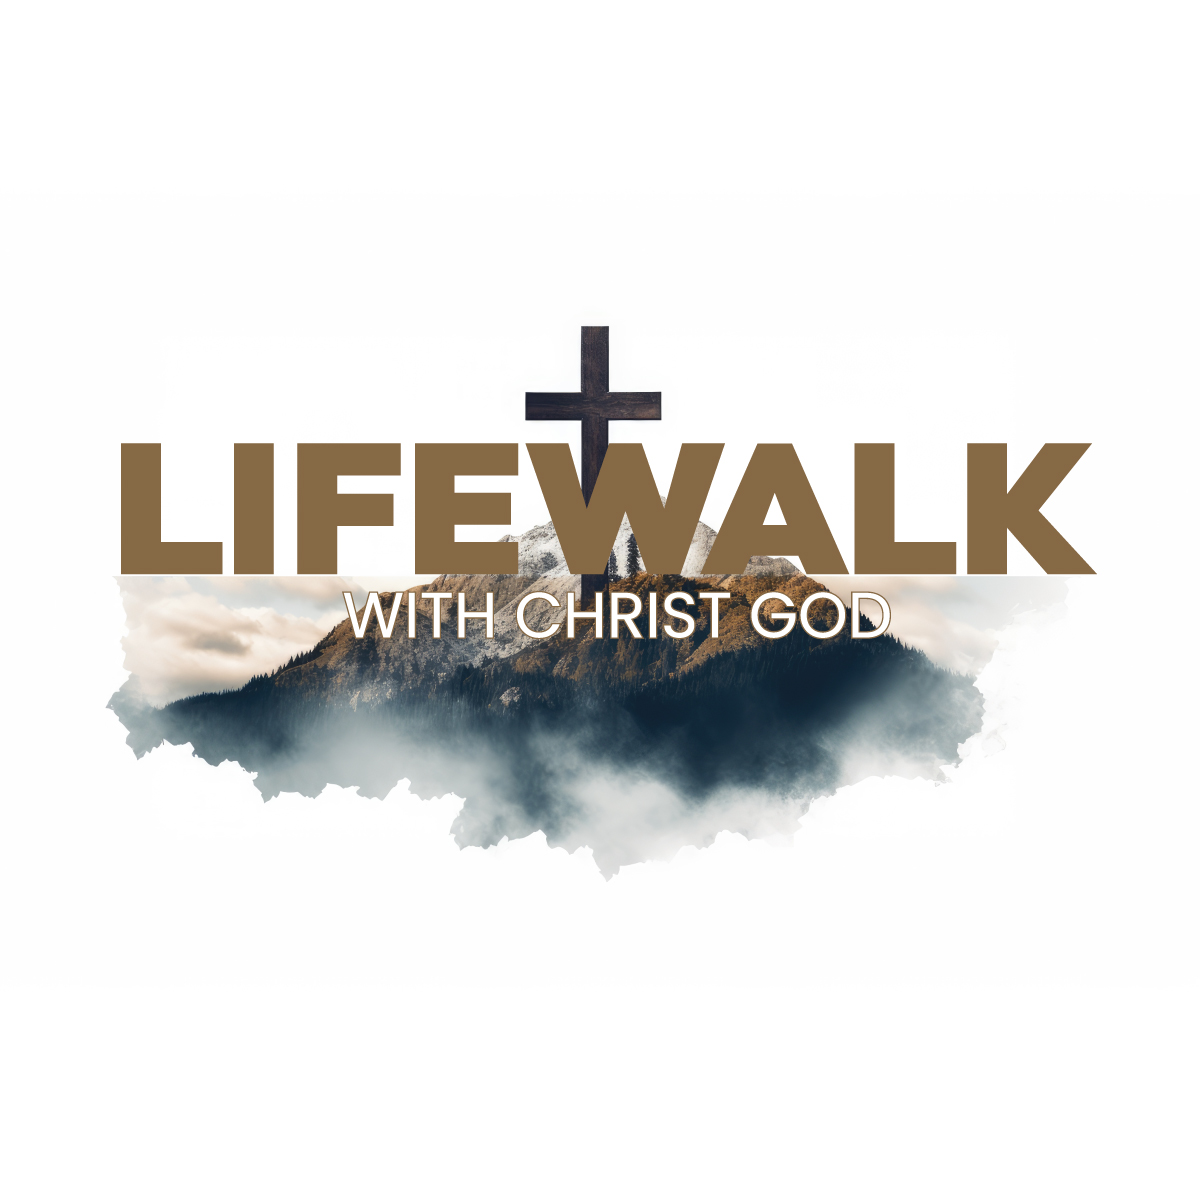 Lifewalk With Christ God